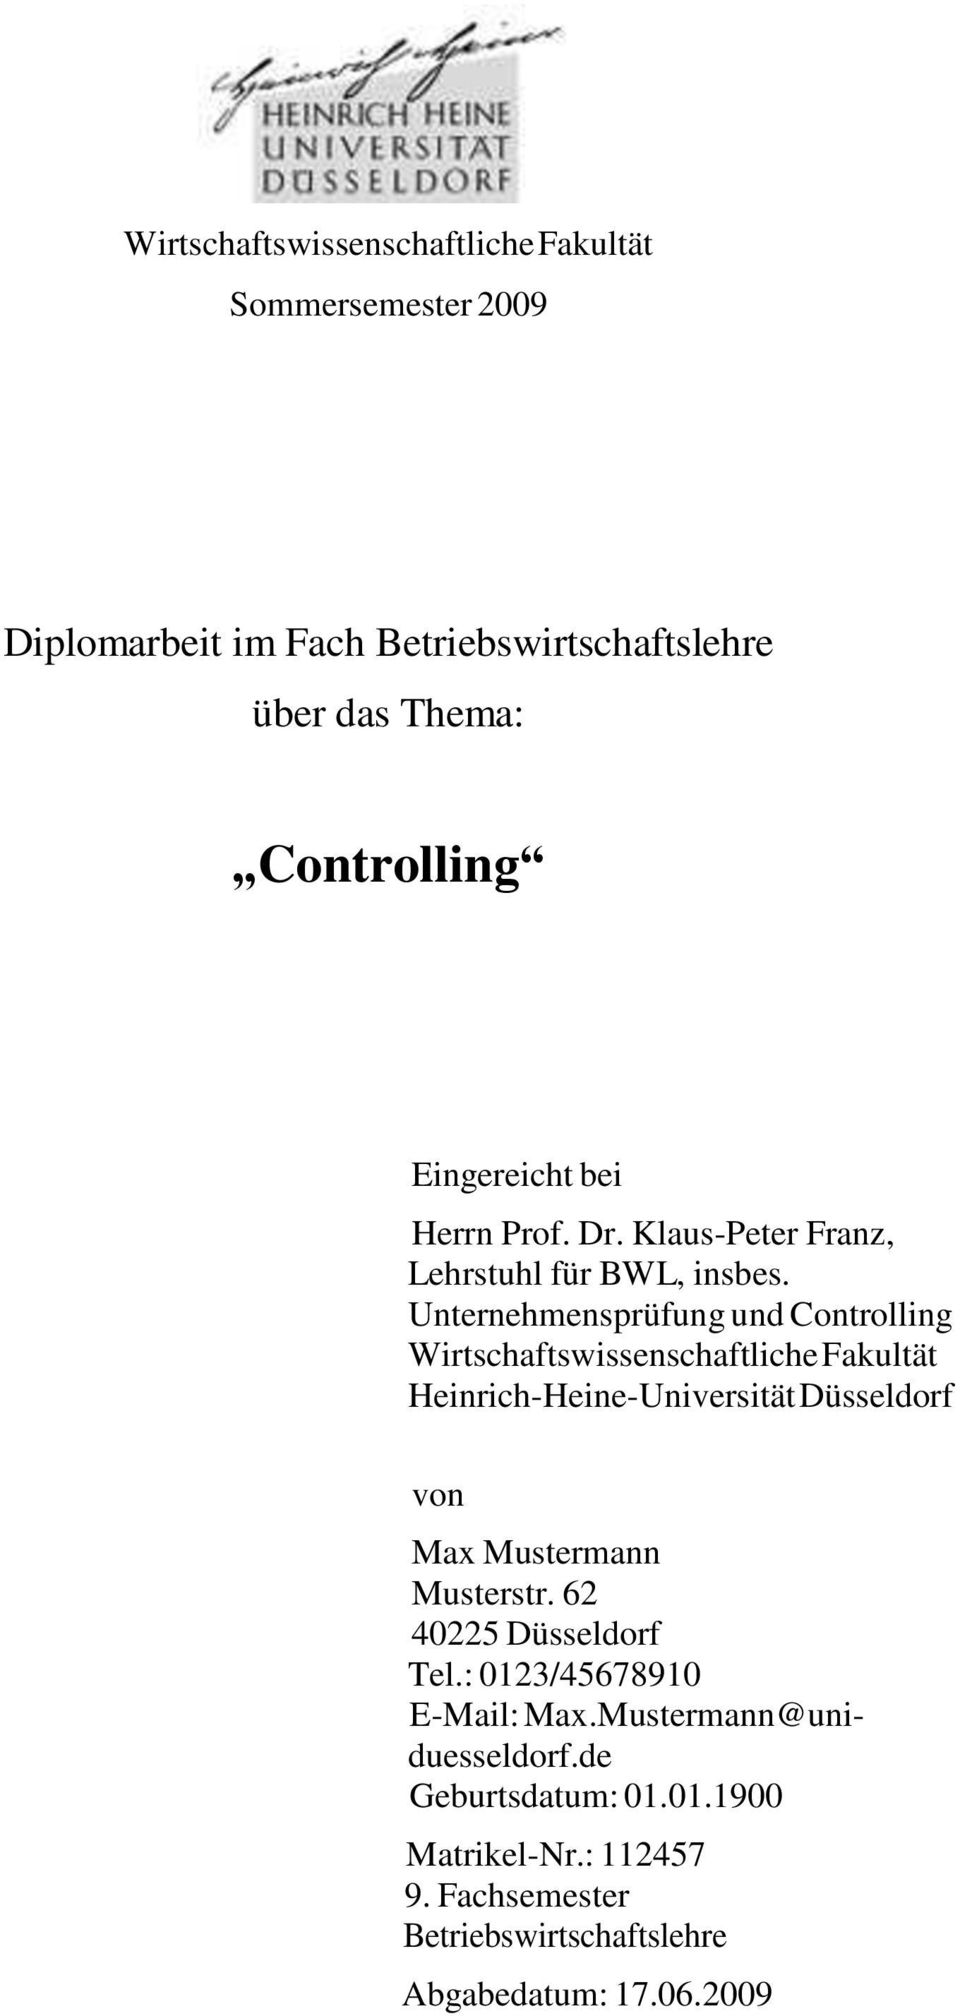 Unternehmensprüfung und Controlling Wirtschaftswissenschaftliche Fakultät Heinrich-Heine-Universität Düsseldorf von Max Mustermann